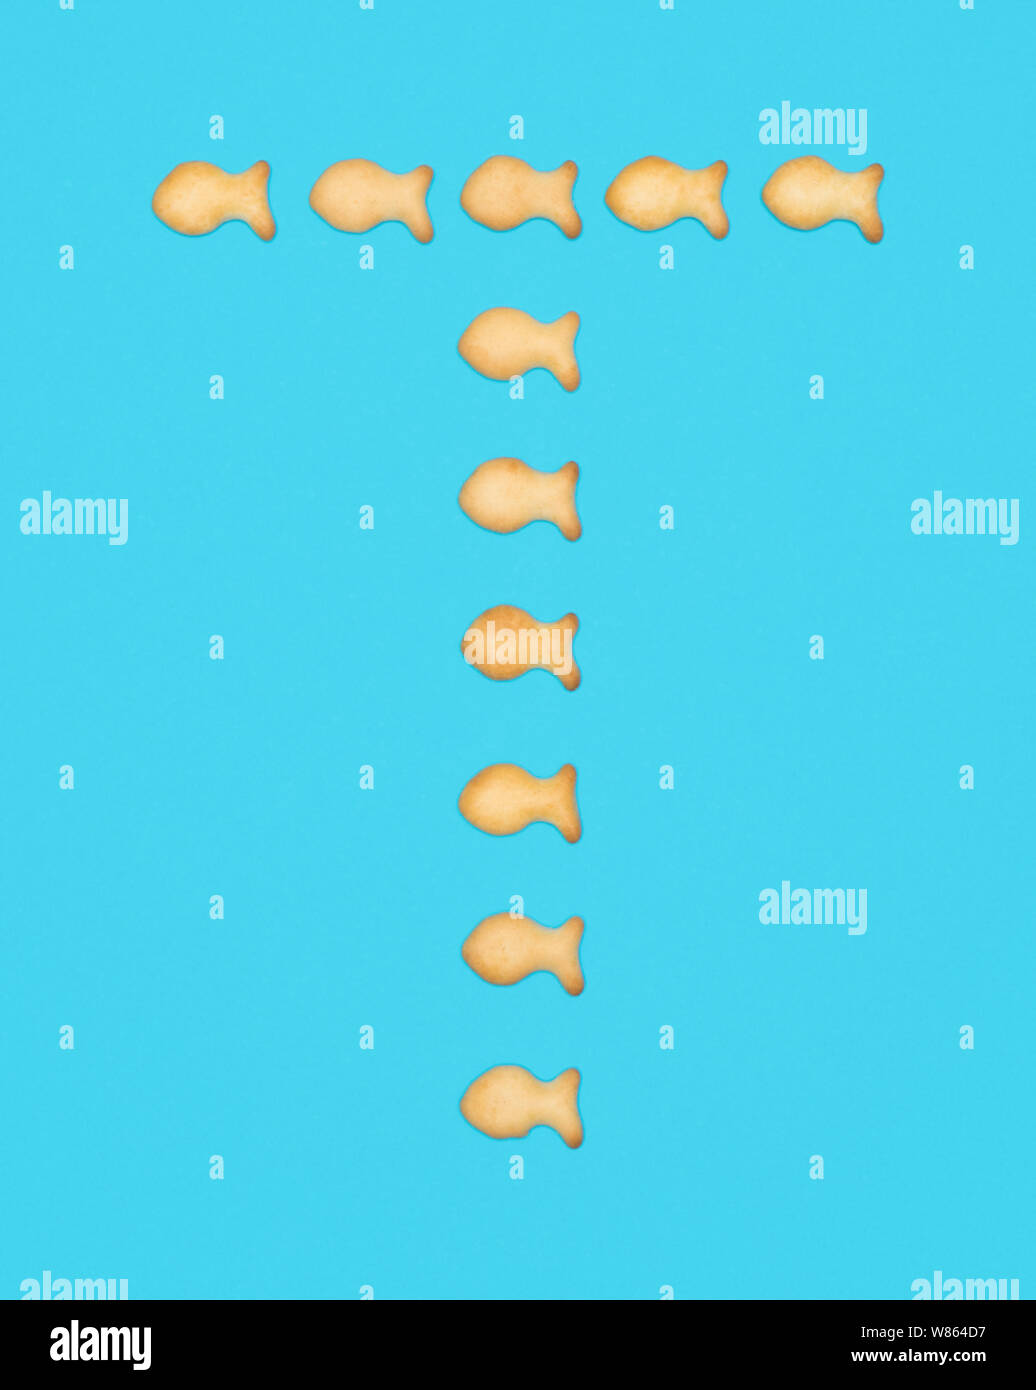 La lettre T alphabet latin de cookies en forme de poisson sur fond bleu Banque D'Images